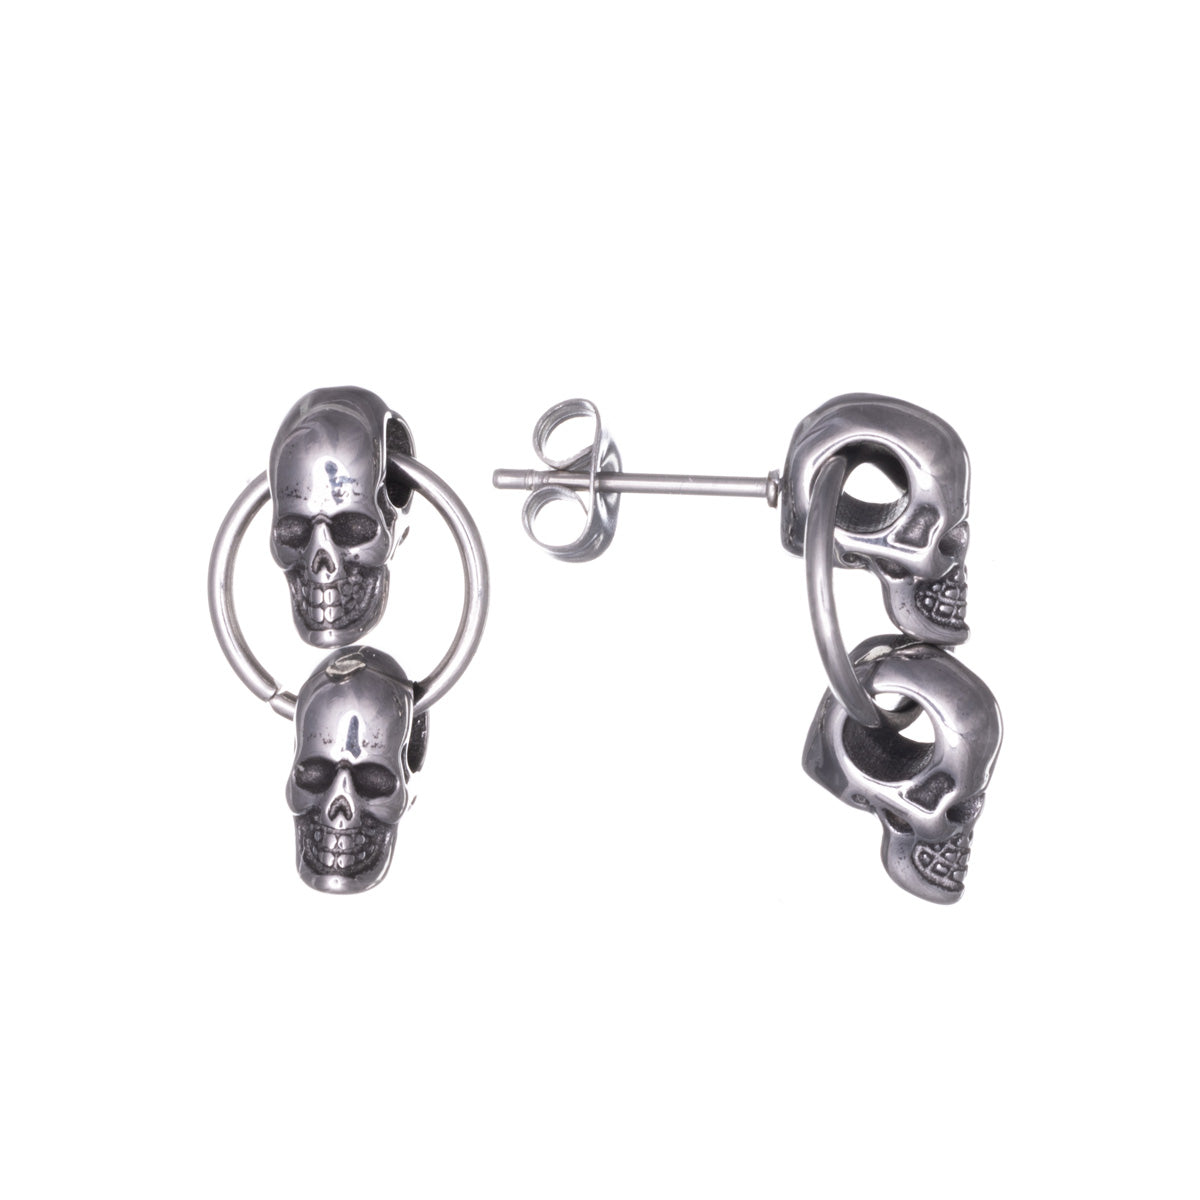 Steel hanging skull earrings (Steel 316L)